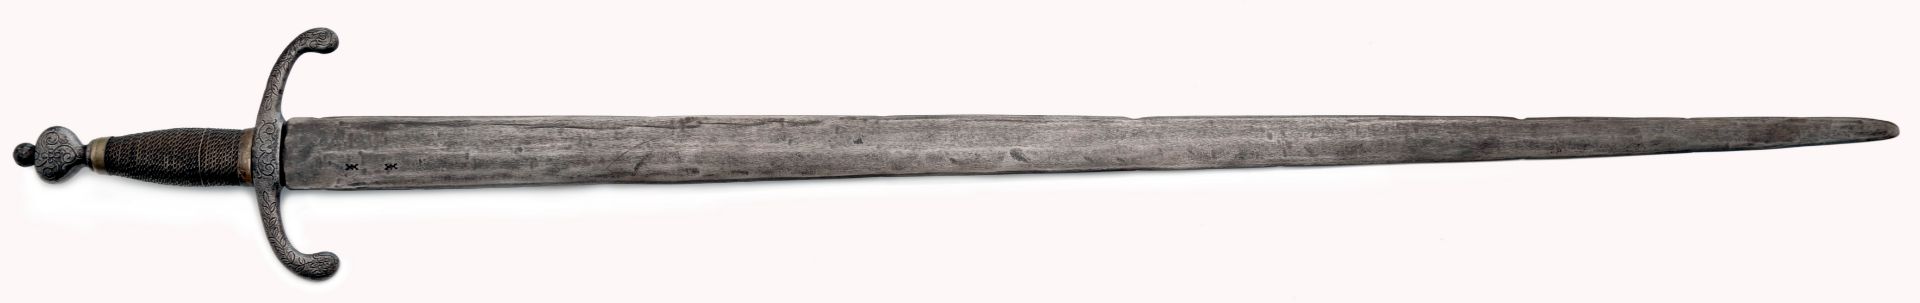 Schwert, Historismus im Stil des 16. Jahrhunderts - Bild 3 aus 3